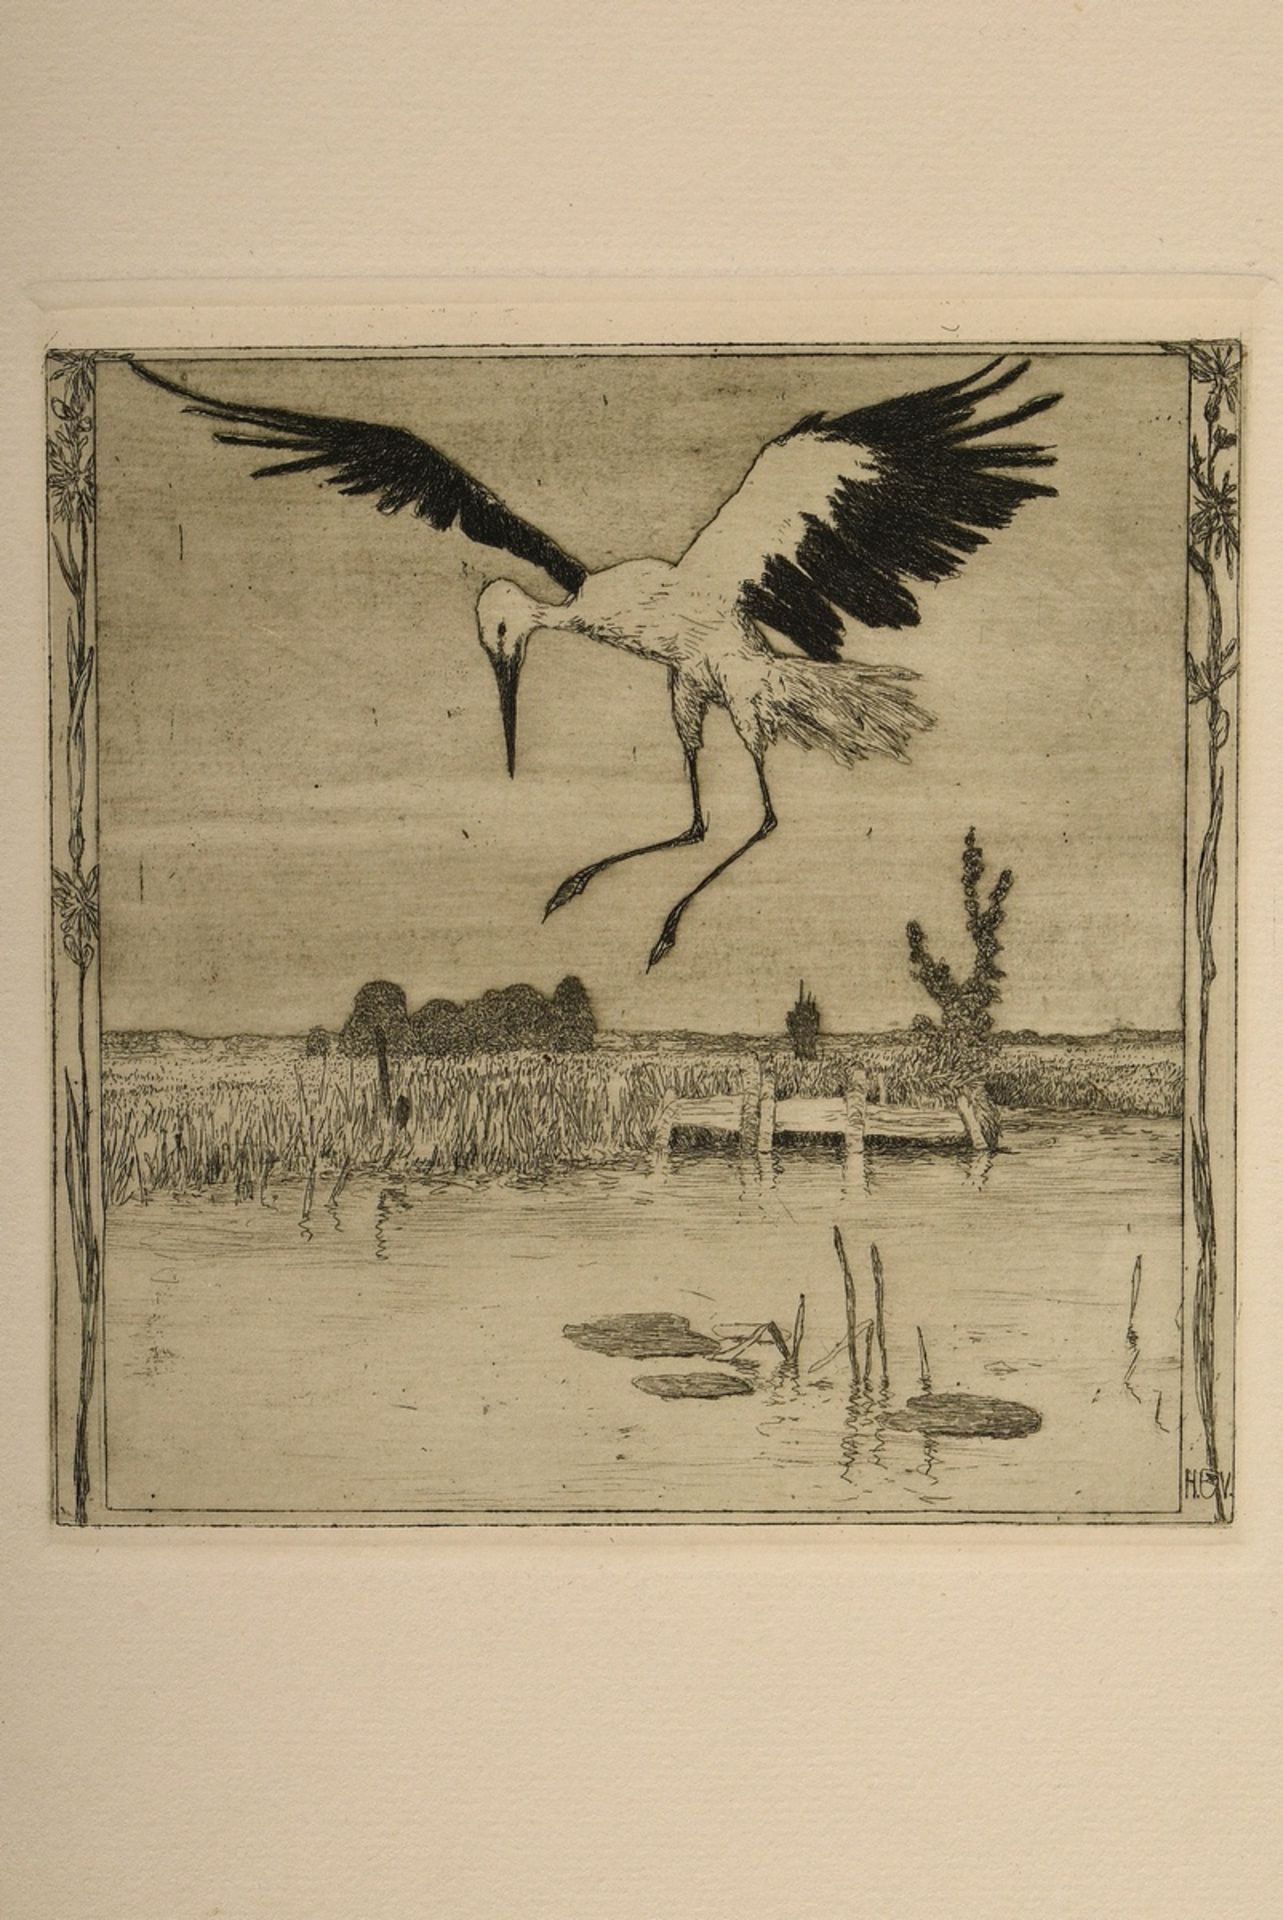 Vogeler, Heinrich (1872-1942) "An den Frühling" 1899/1901, portfolio with 10 etchings and prelimina - Image 17 of 25